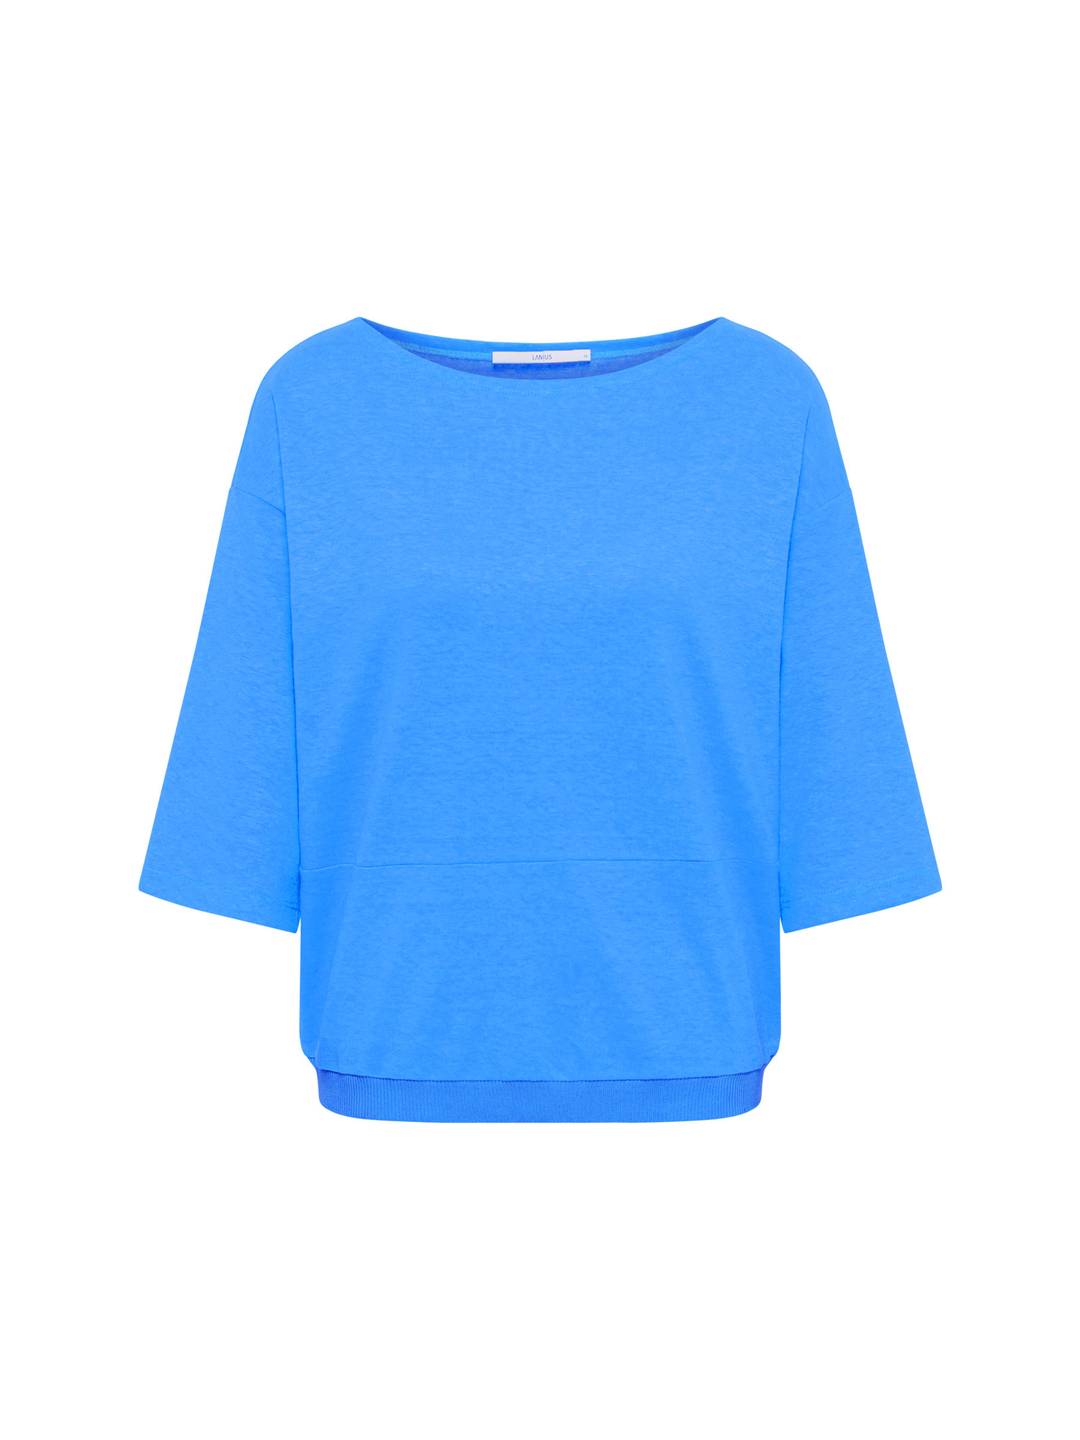 Shirt OCS Summer 24 light blue von Lanius